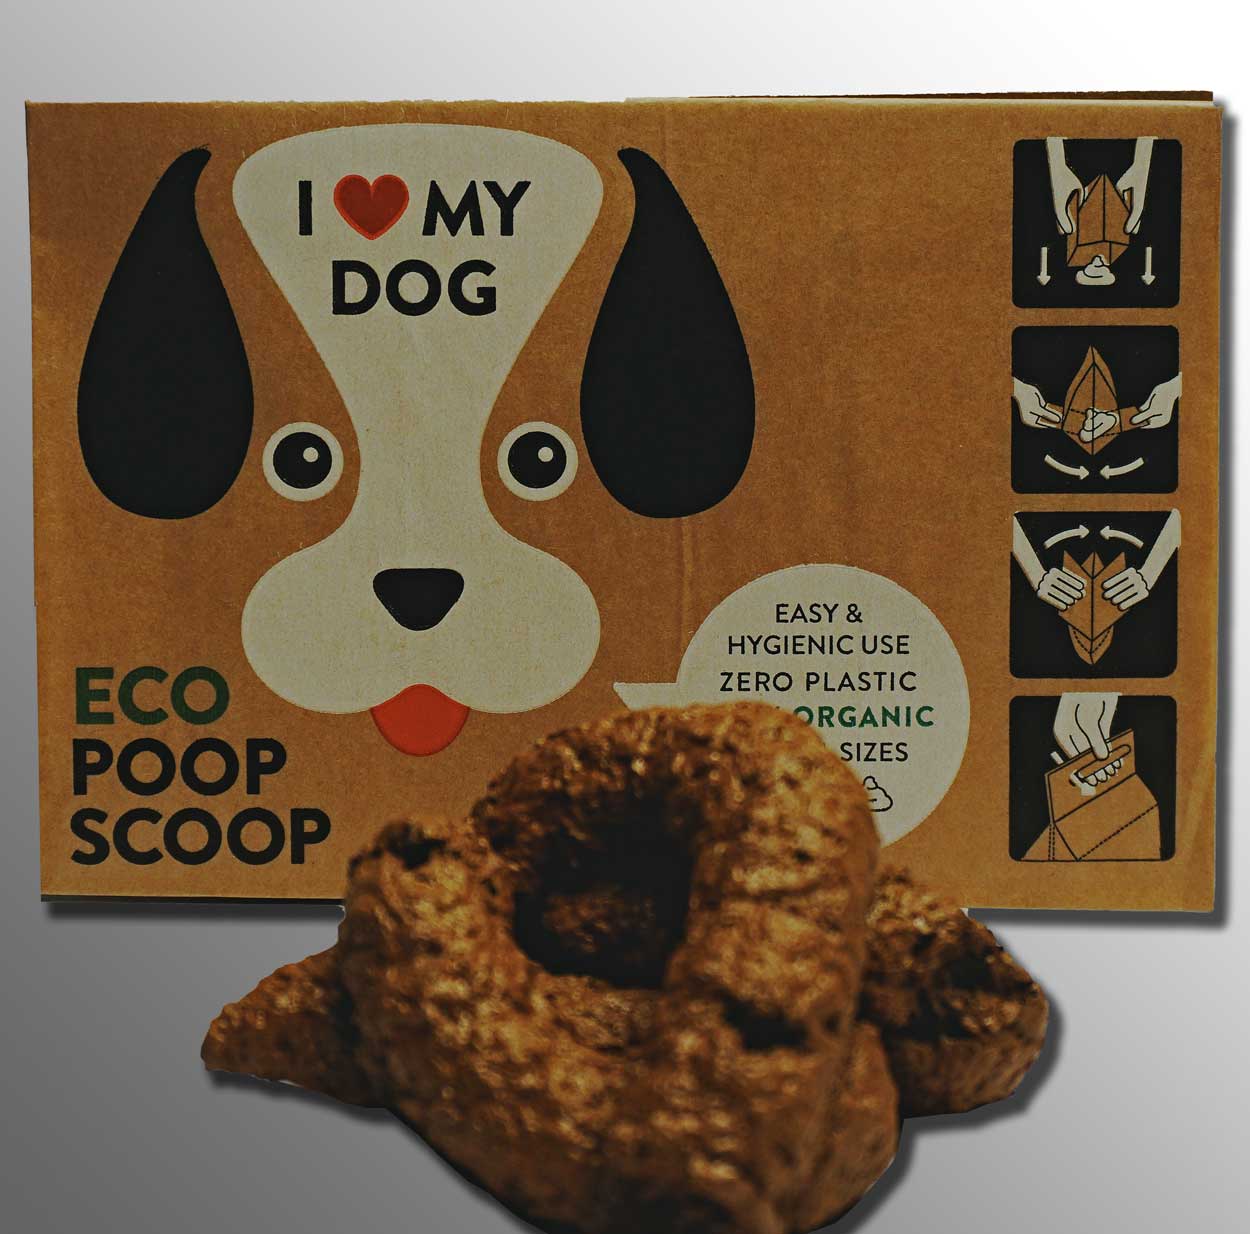 Eco Poop Scoop - Hundekotbeutel biologisch abbaubar